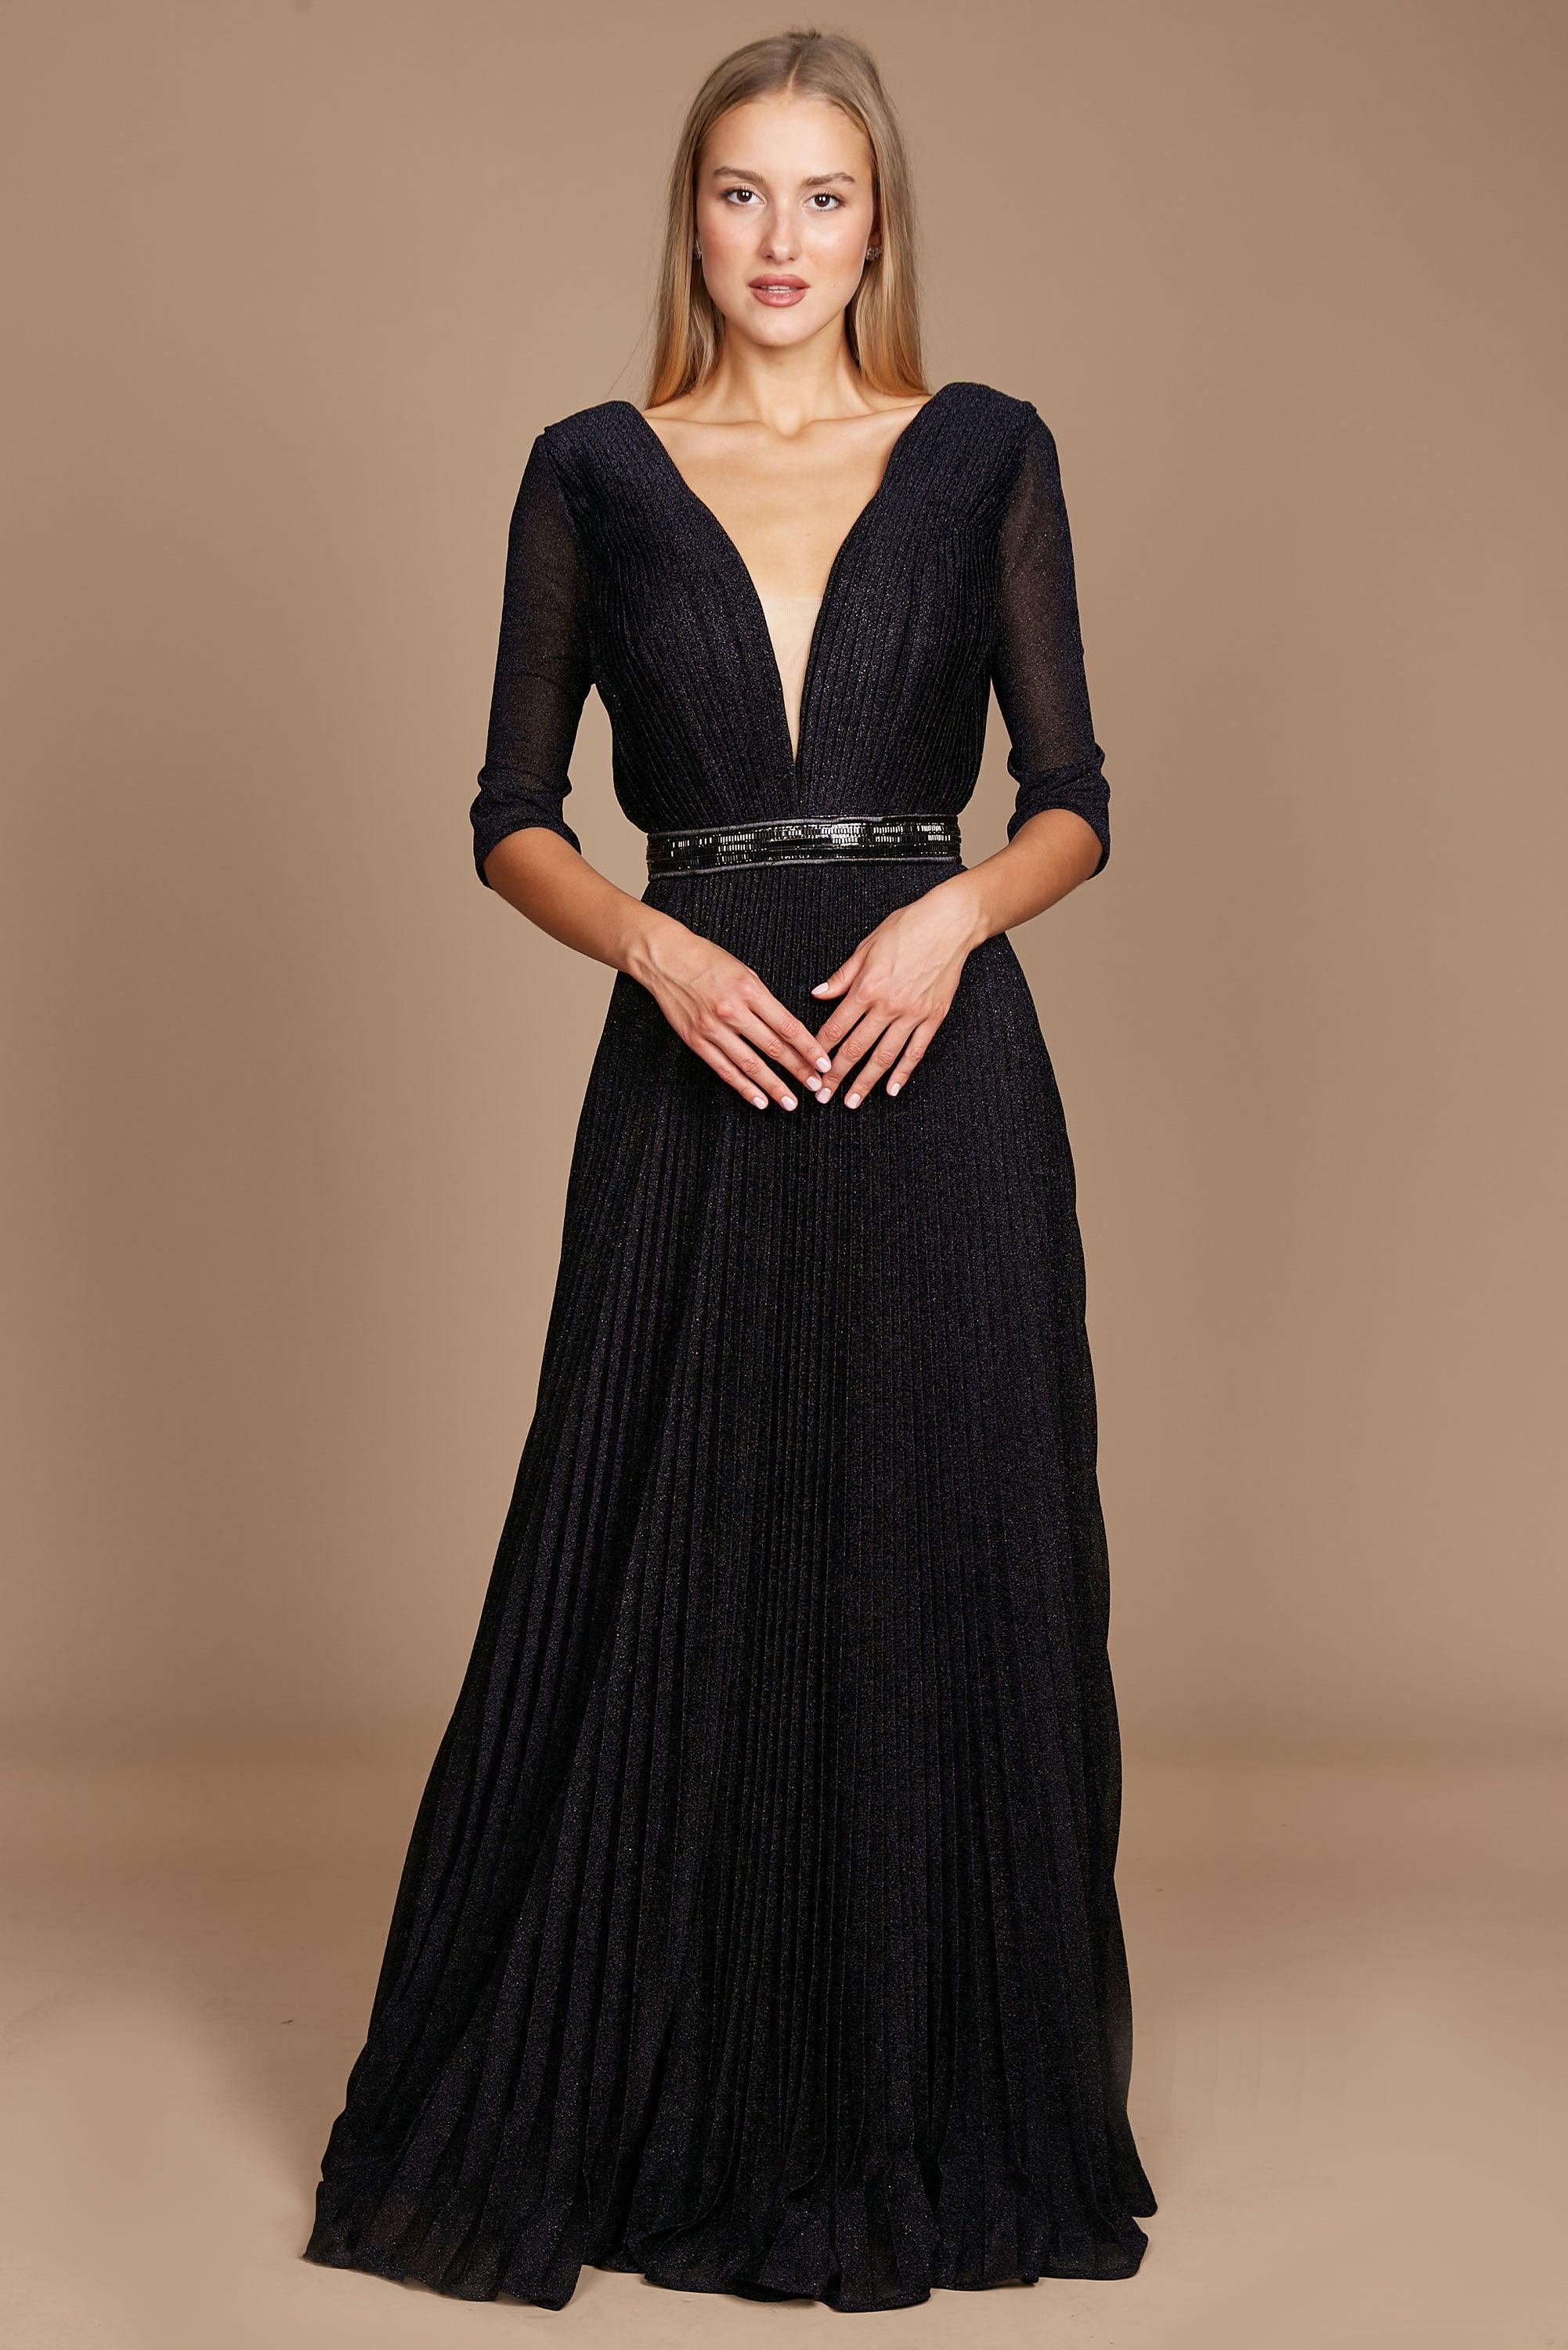 Formal Dresses Long Sleeve Formal Evening Dress Black